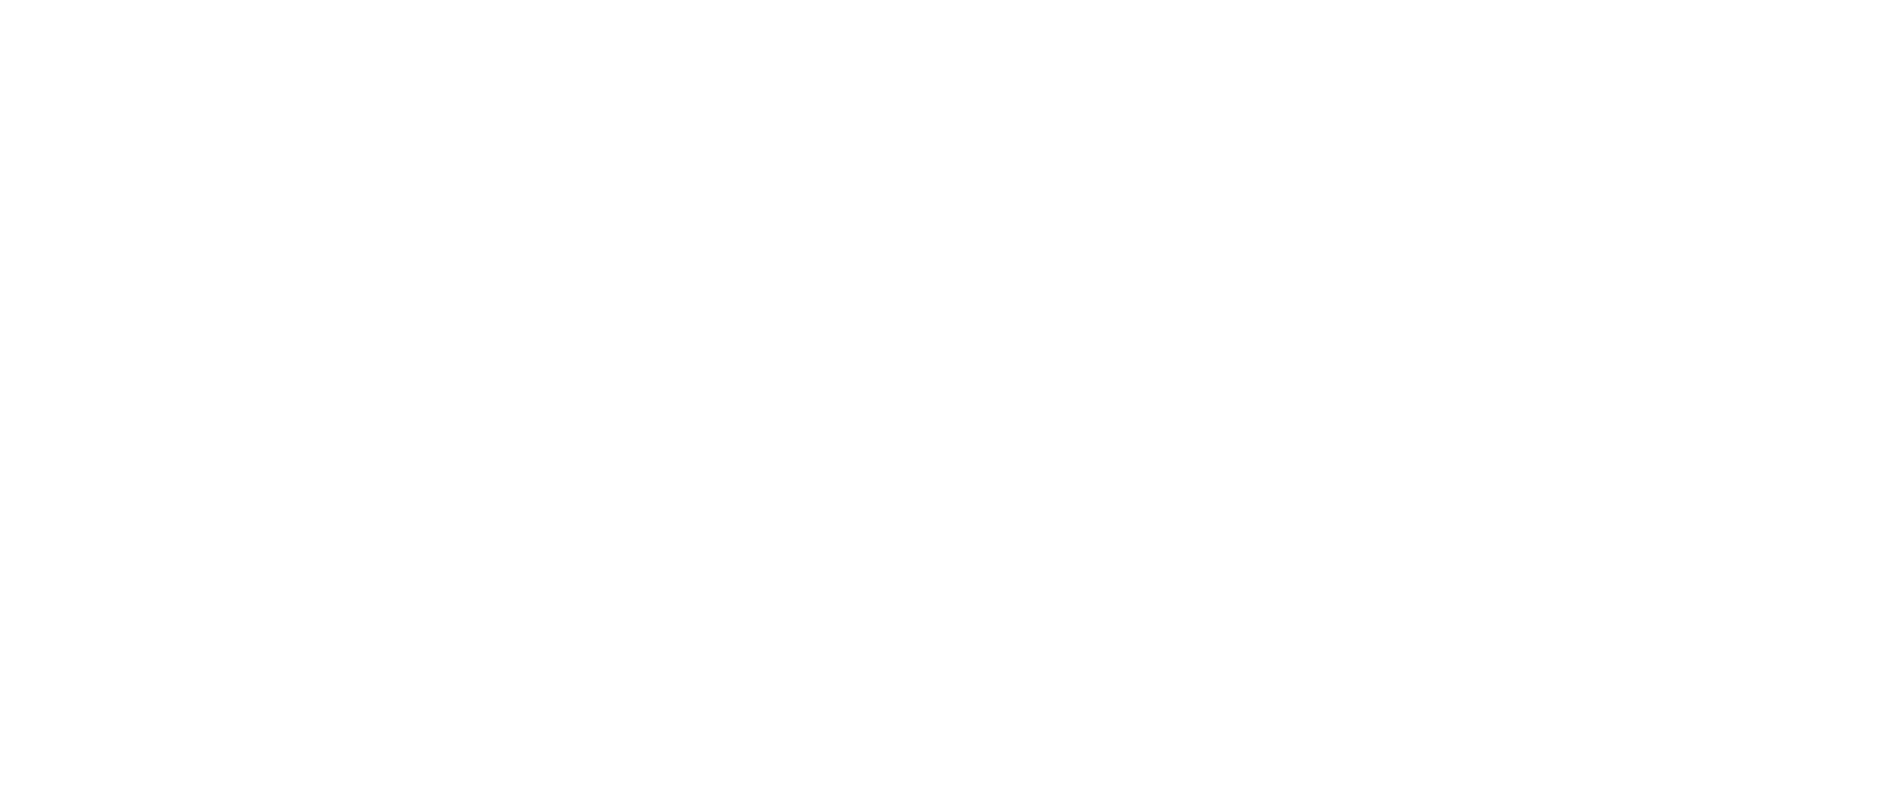 CREATIVE BRAIN WEEK WHITE CROPPED 1